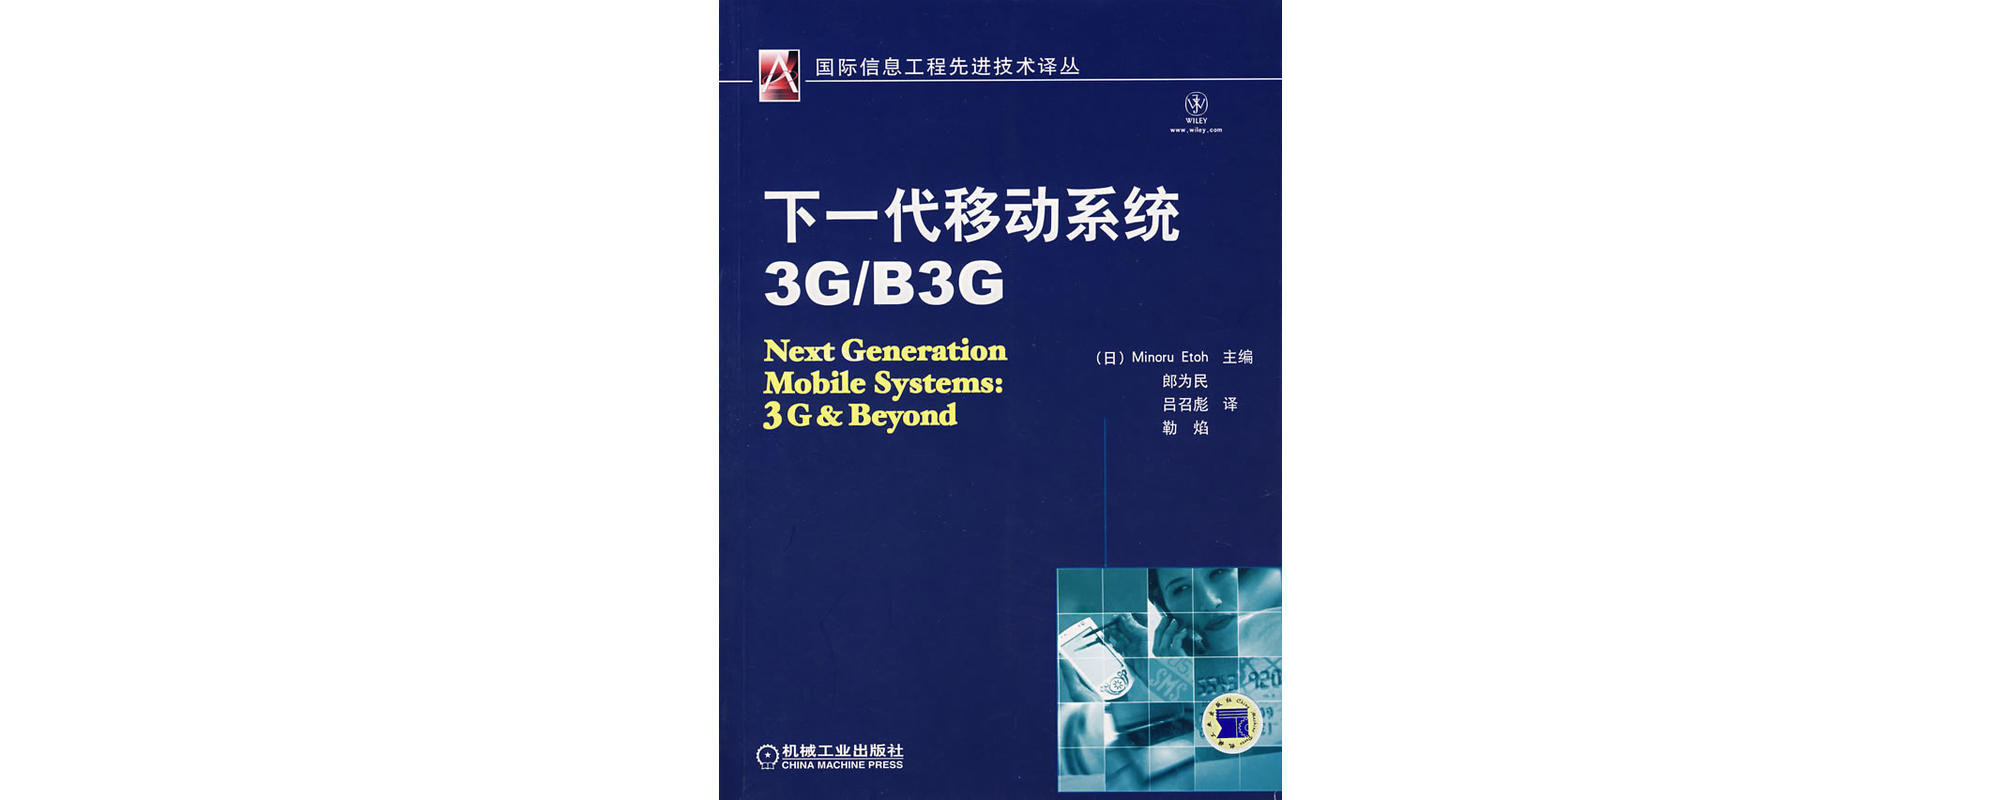 下一代移動系統3G/B3G